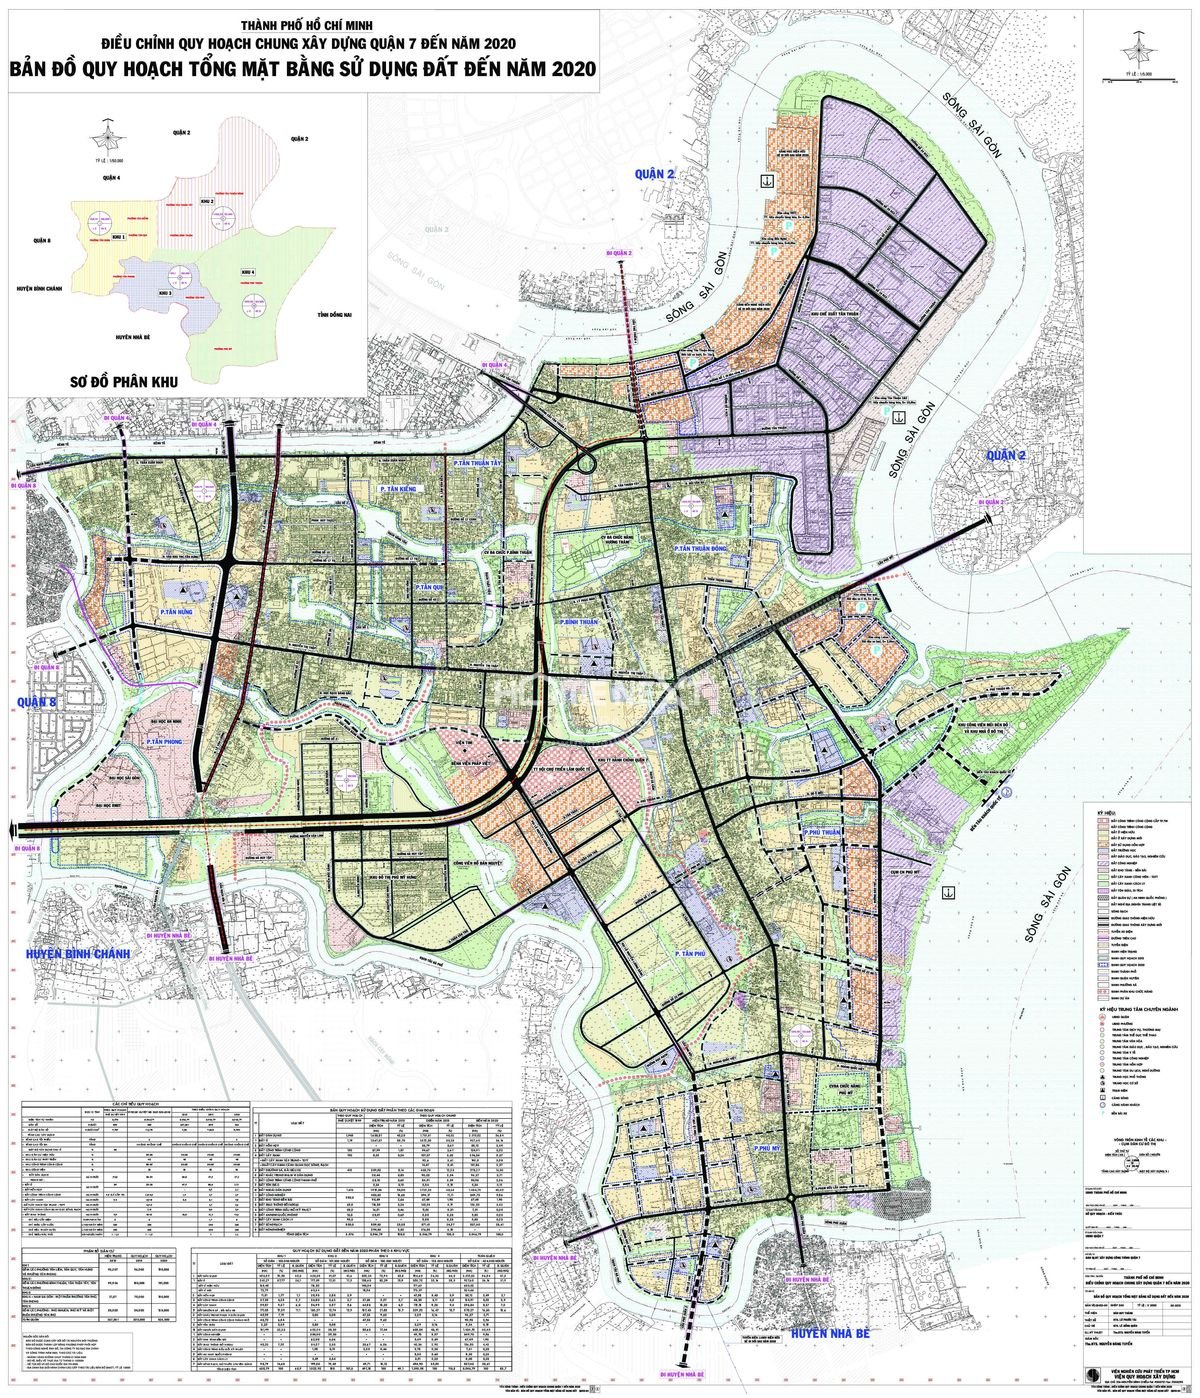 Cập nhật Quận 7: Quận 7 đang trở thành một trong những nơi phát triển nhanh nhất tại Thành phố Hồ Chí Minh. Việc cập nhật các công trình công cộng, trường học và hạ tầng giao thông sẽ giúp cải thiện chất lượng cuộc sống và kinh tế của người dân. Hãy đến để cảm nhận sự thay đổi tại Quận 7!